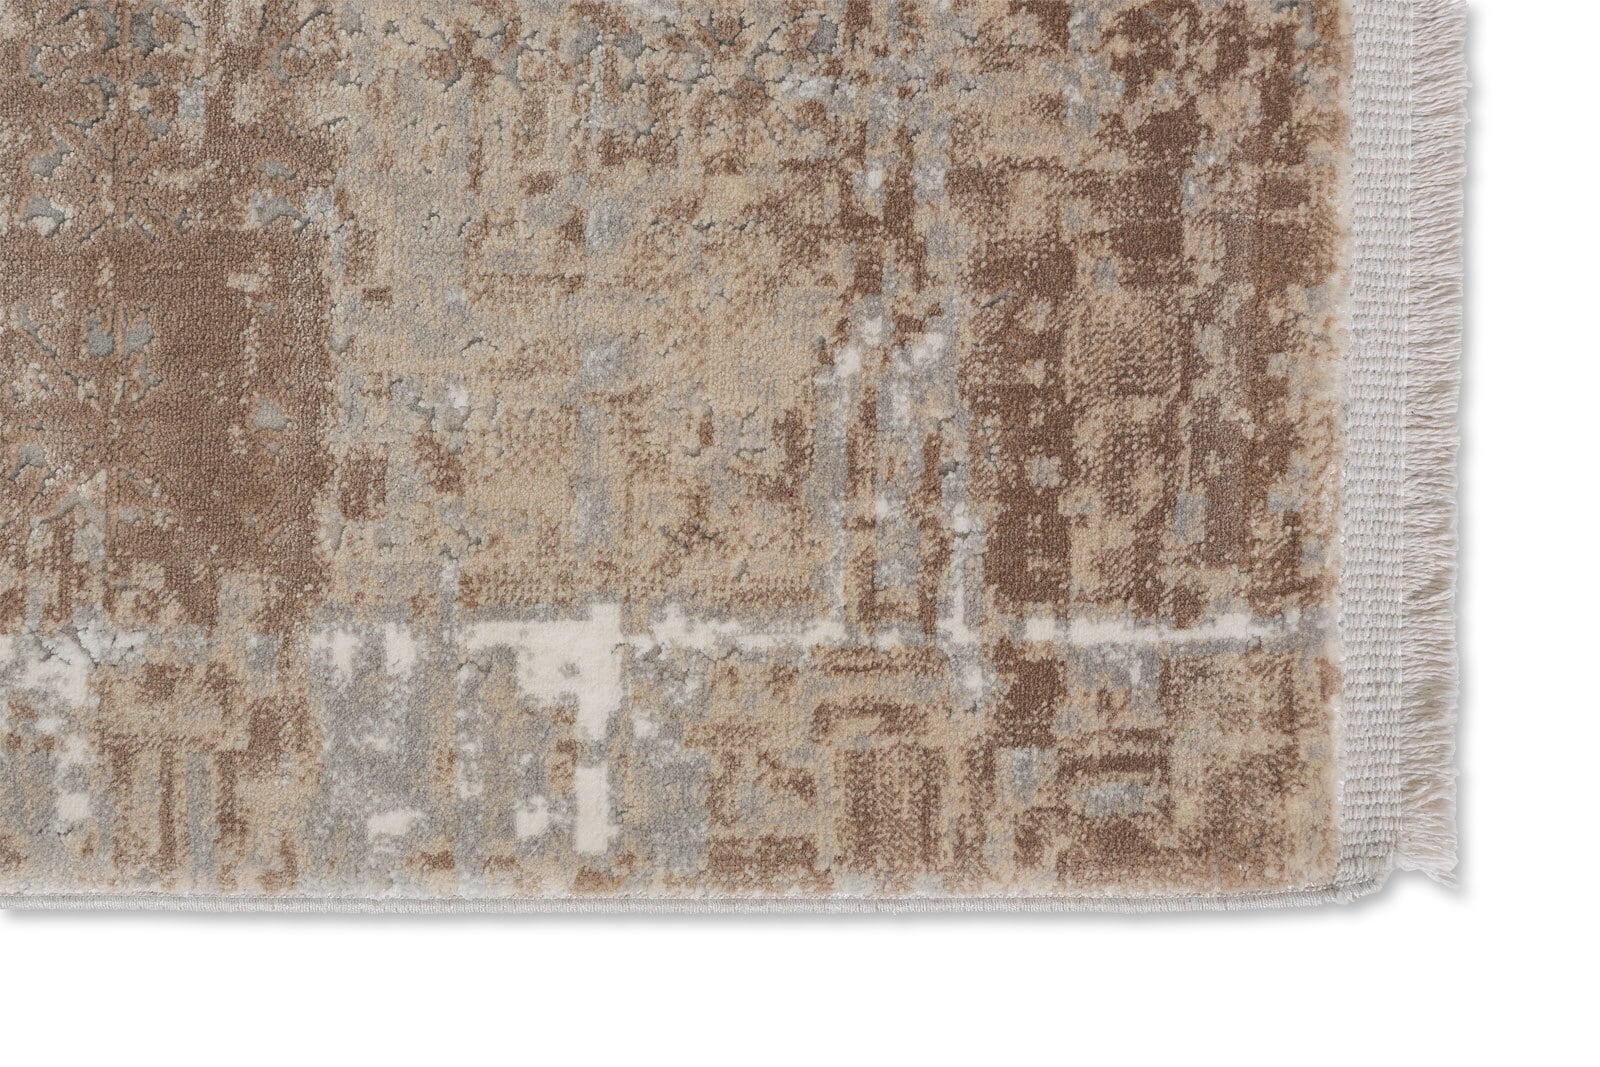 SCHÖNER WOHNEN-Kollektion Teppich VISION 200 x 290 cm beige 